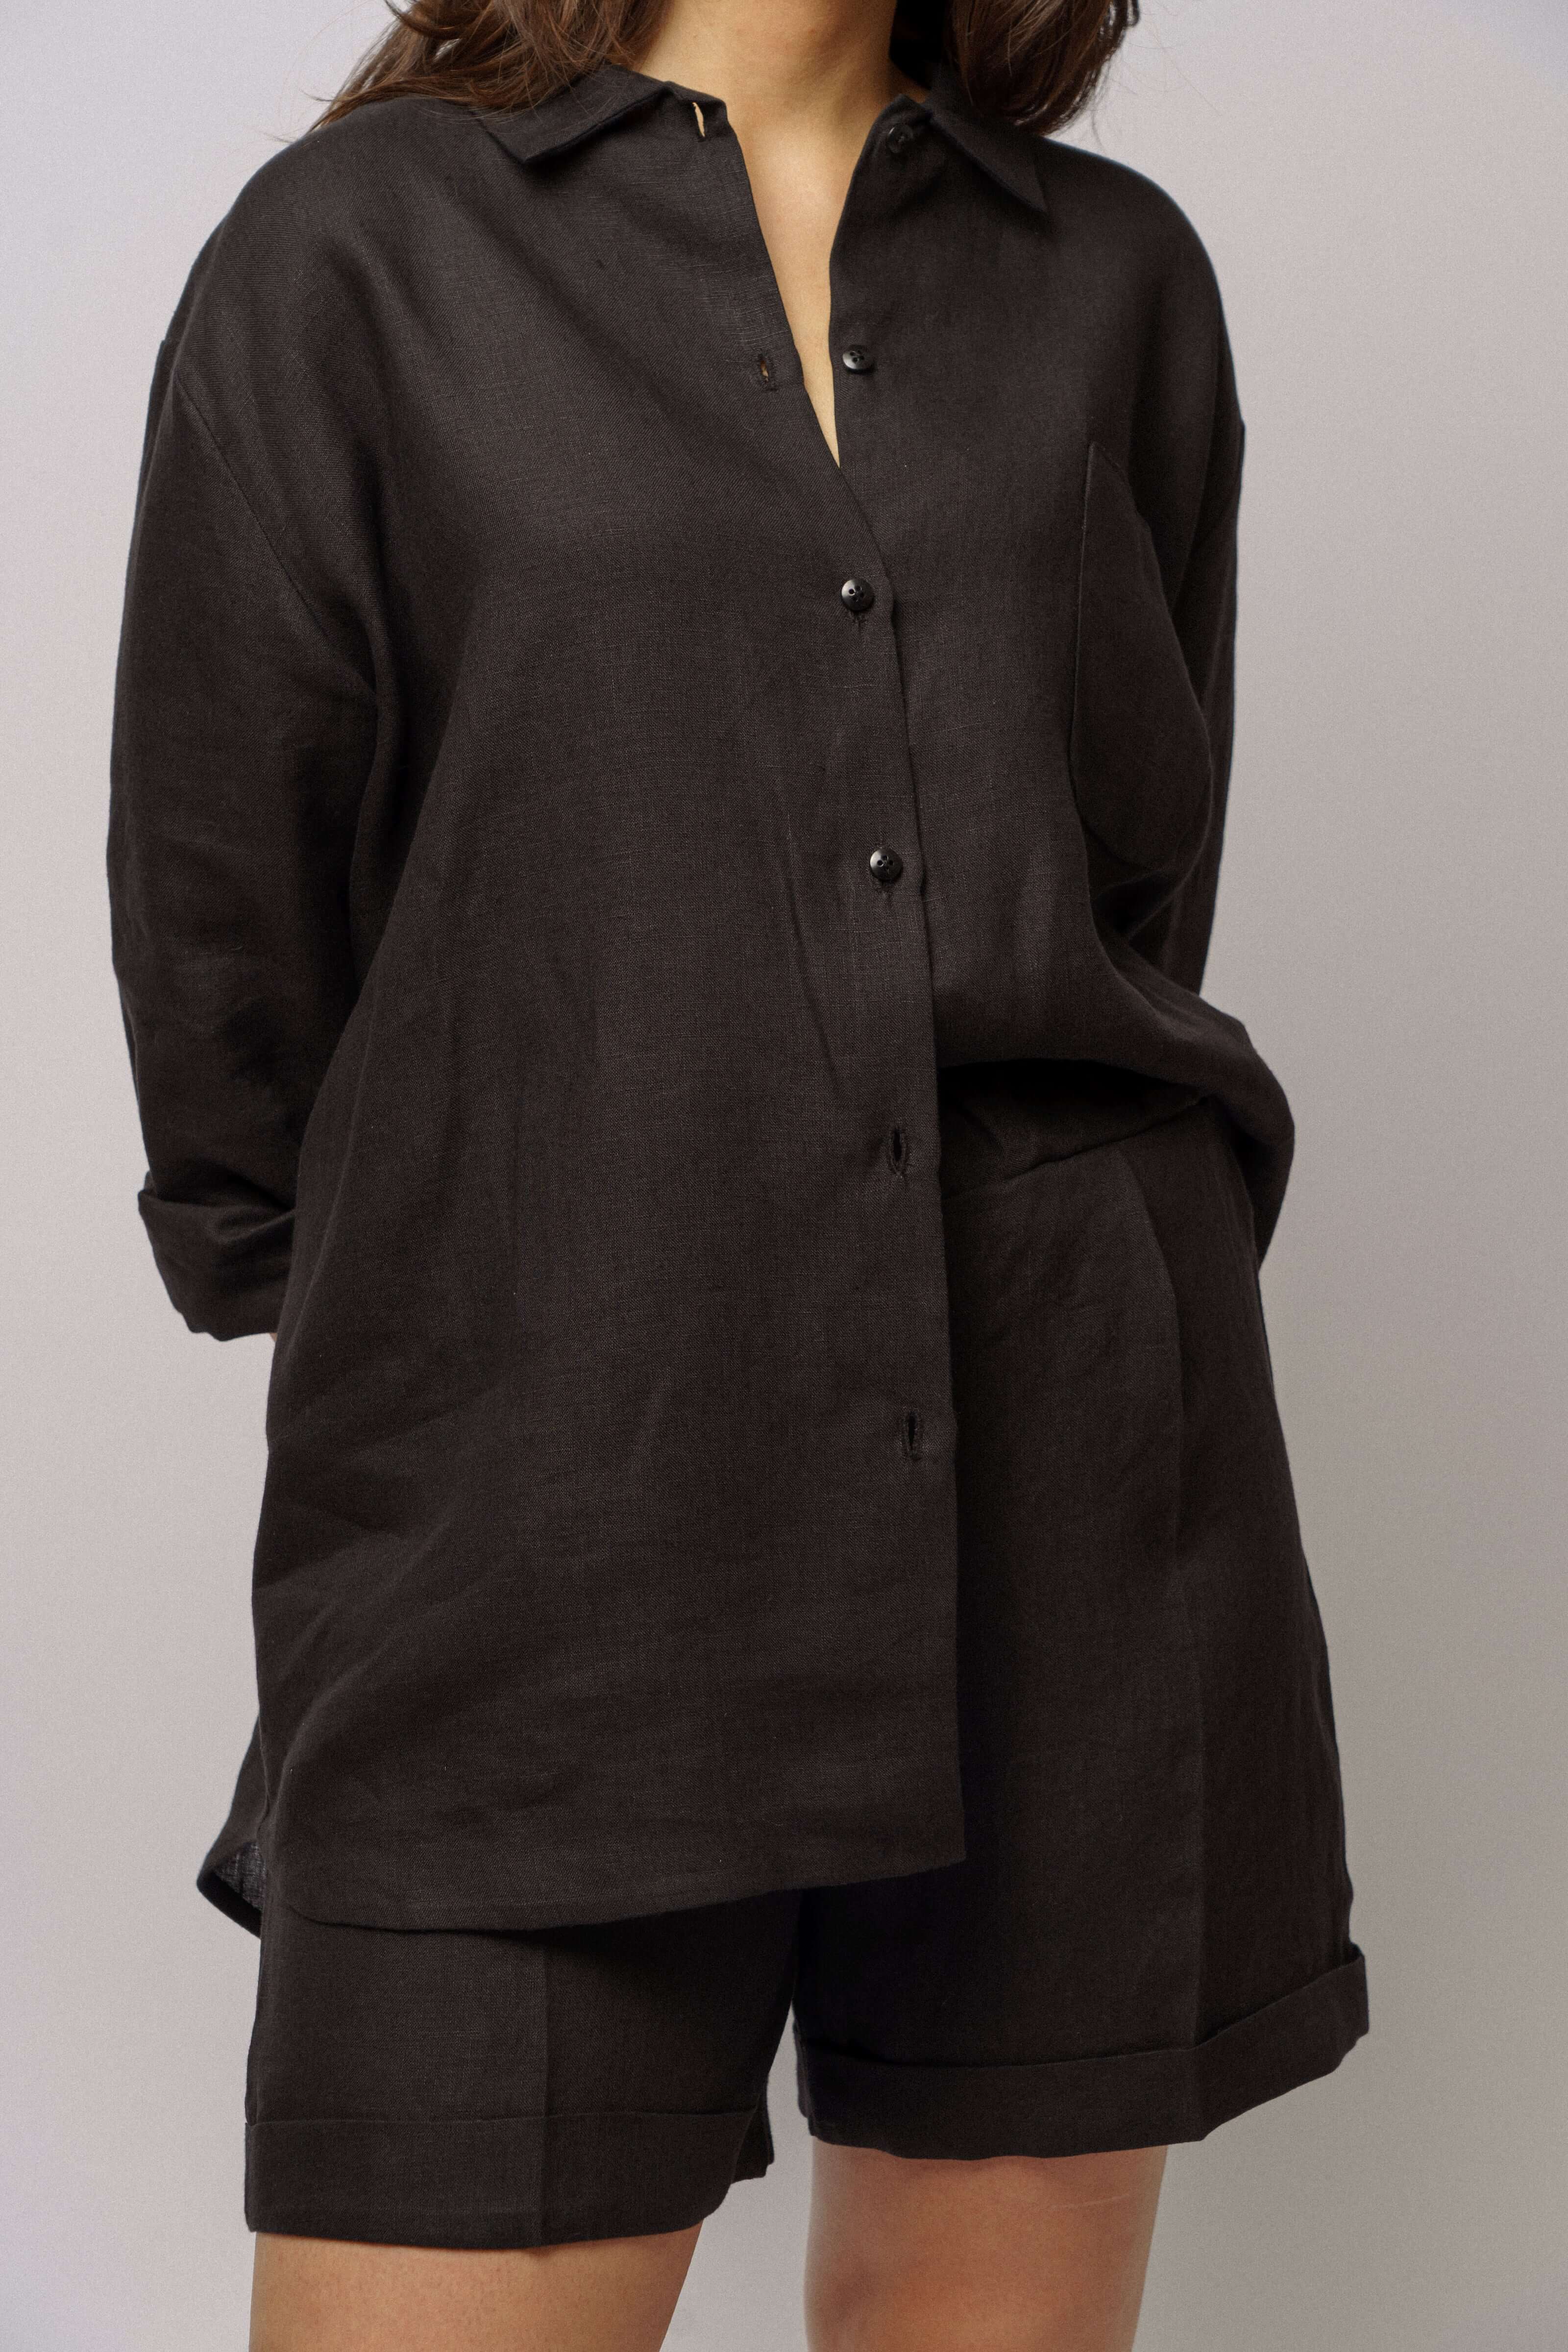 Oversized dámská černá košile a dámské kraťasy z přírodního lnu, značka ADVA Studios.